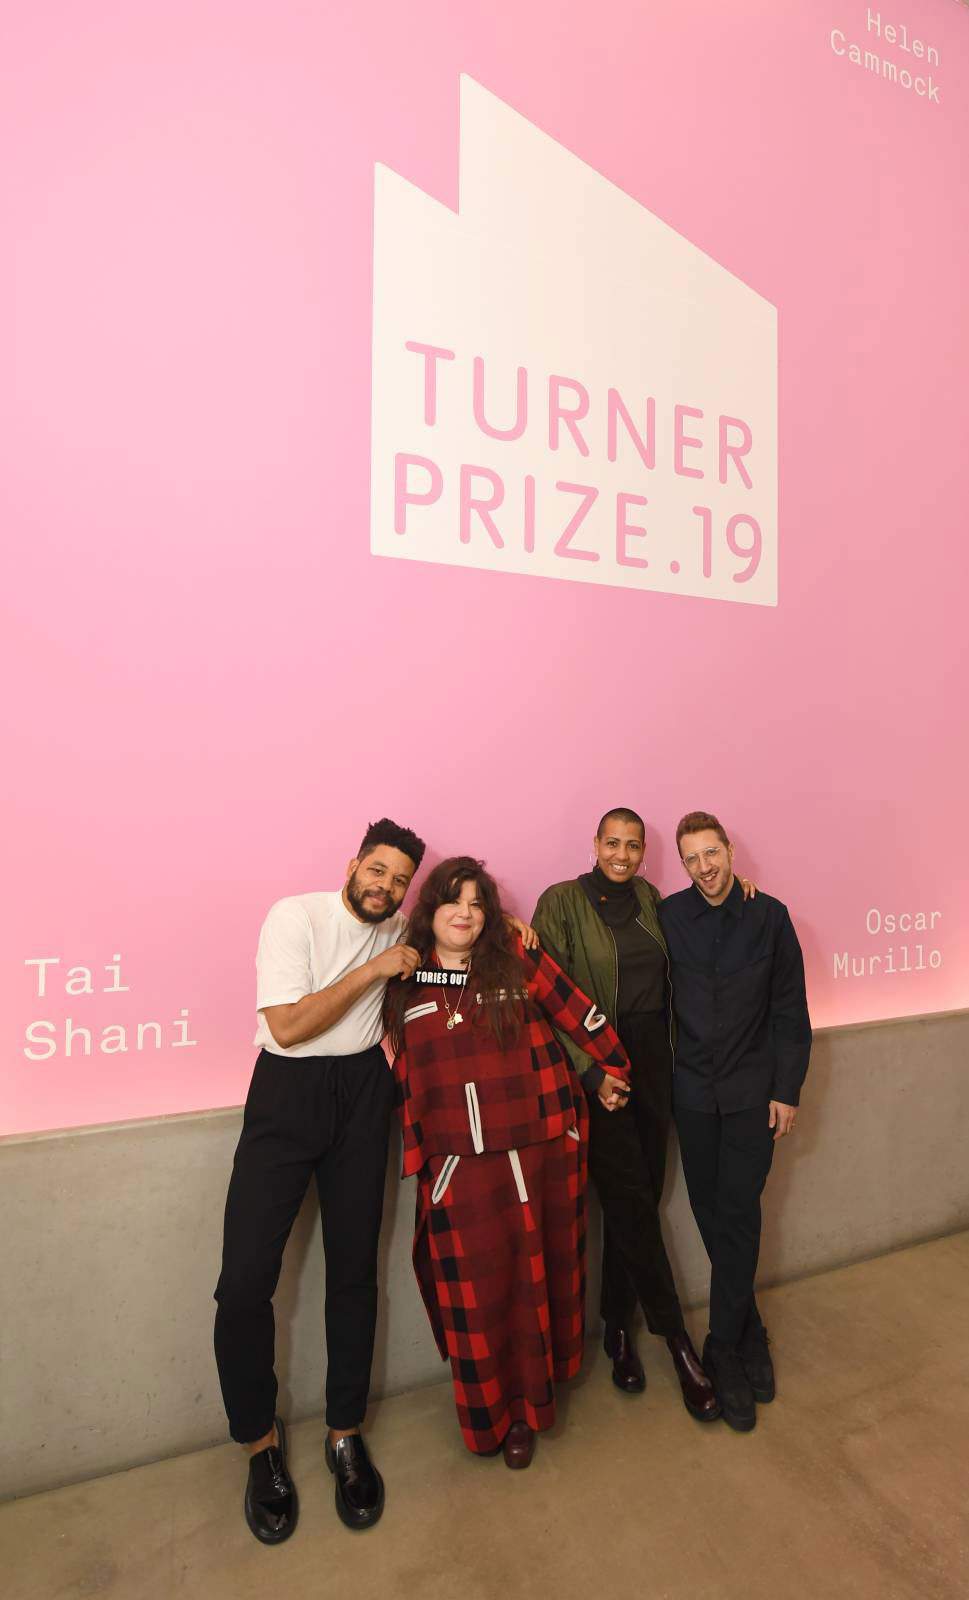 Un acte de partage et de solidarité au Turner Prize 2019 : les lauréats tous finalistes.